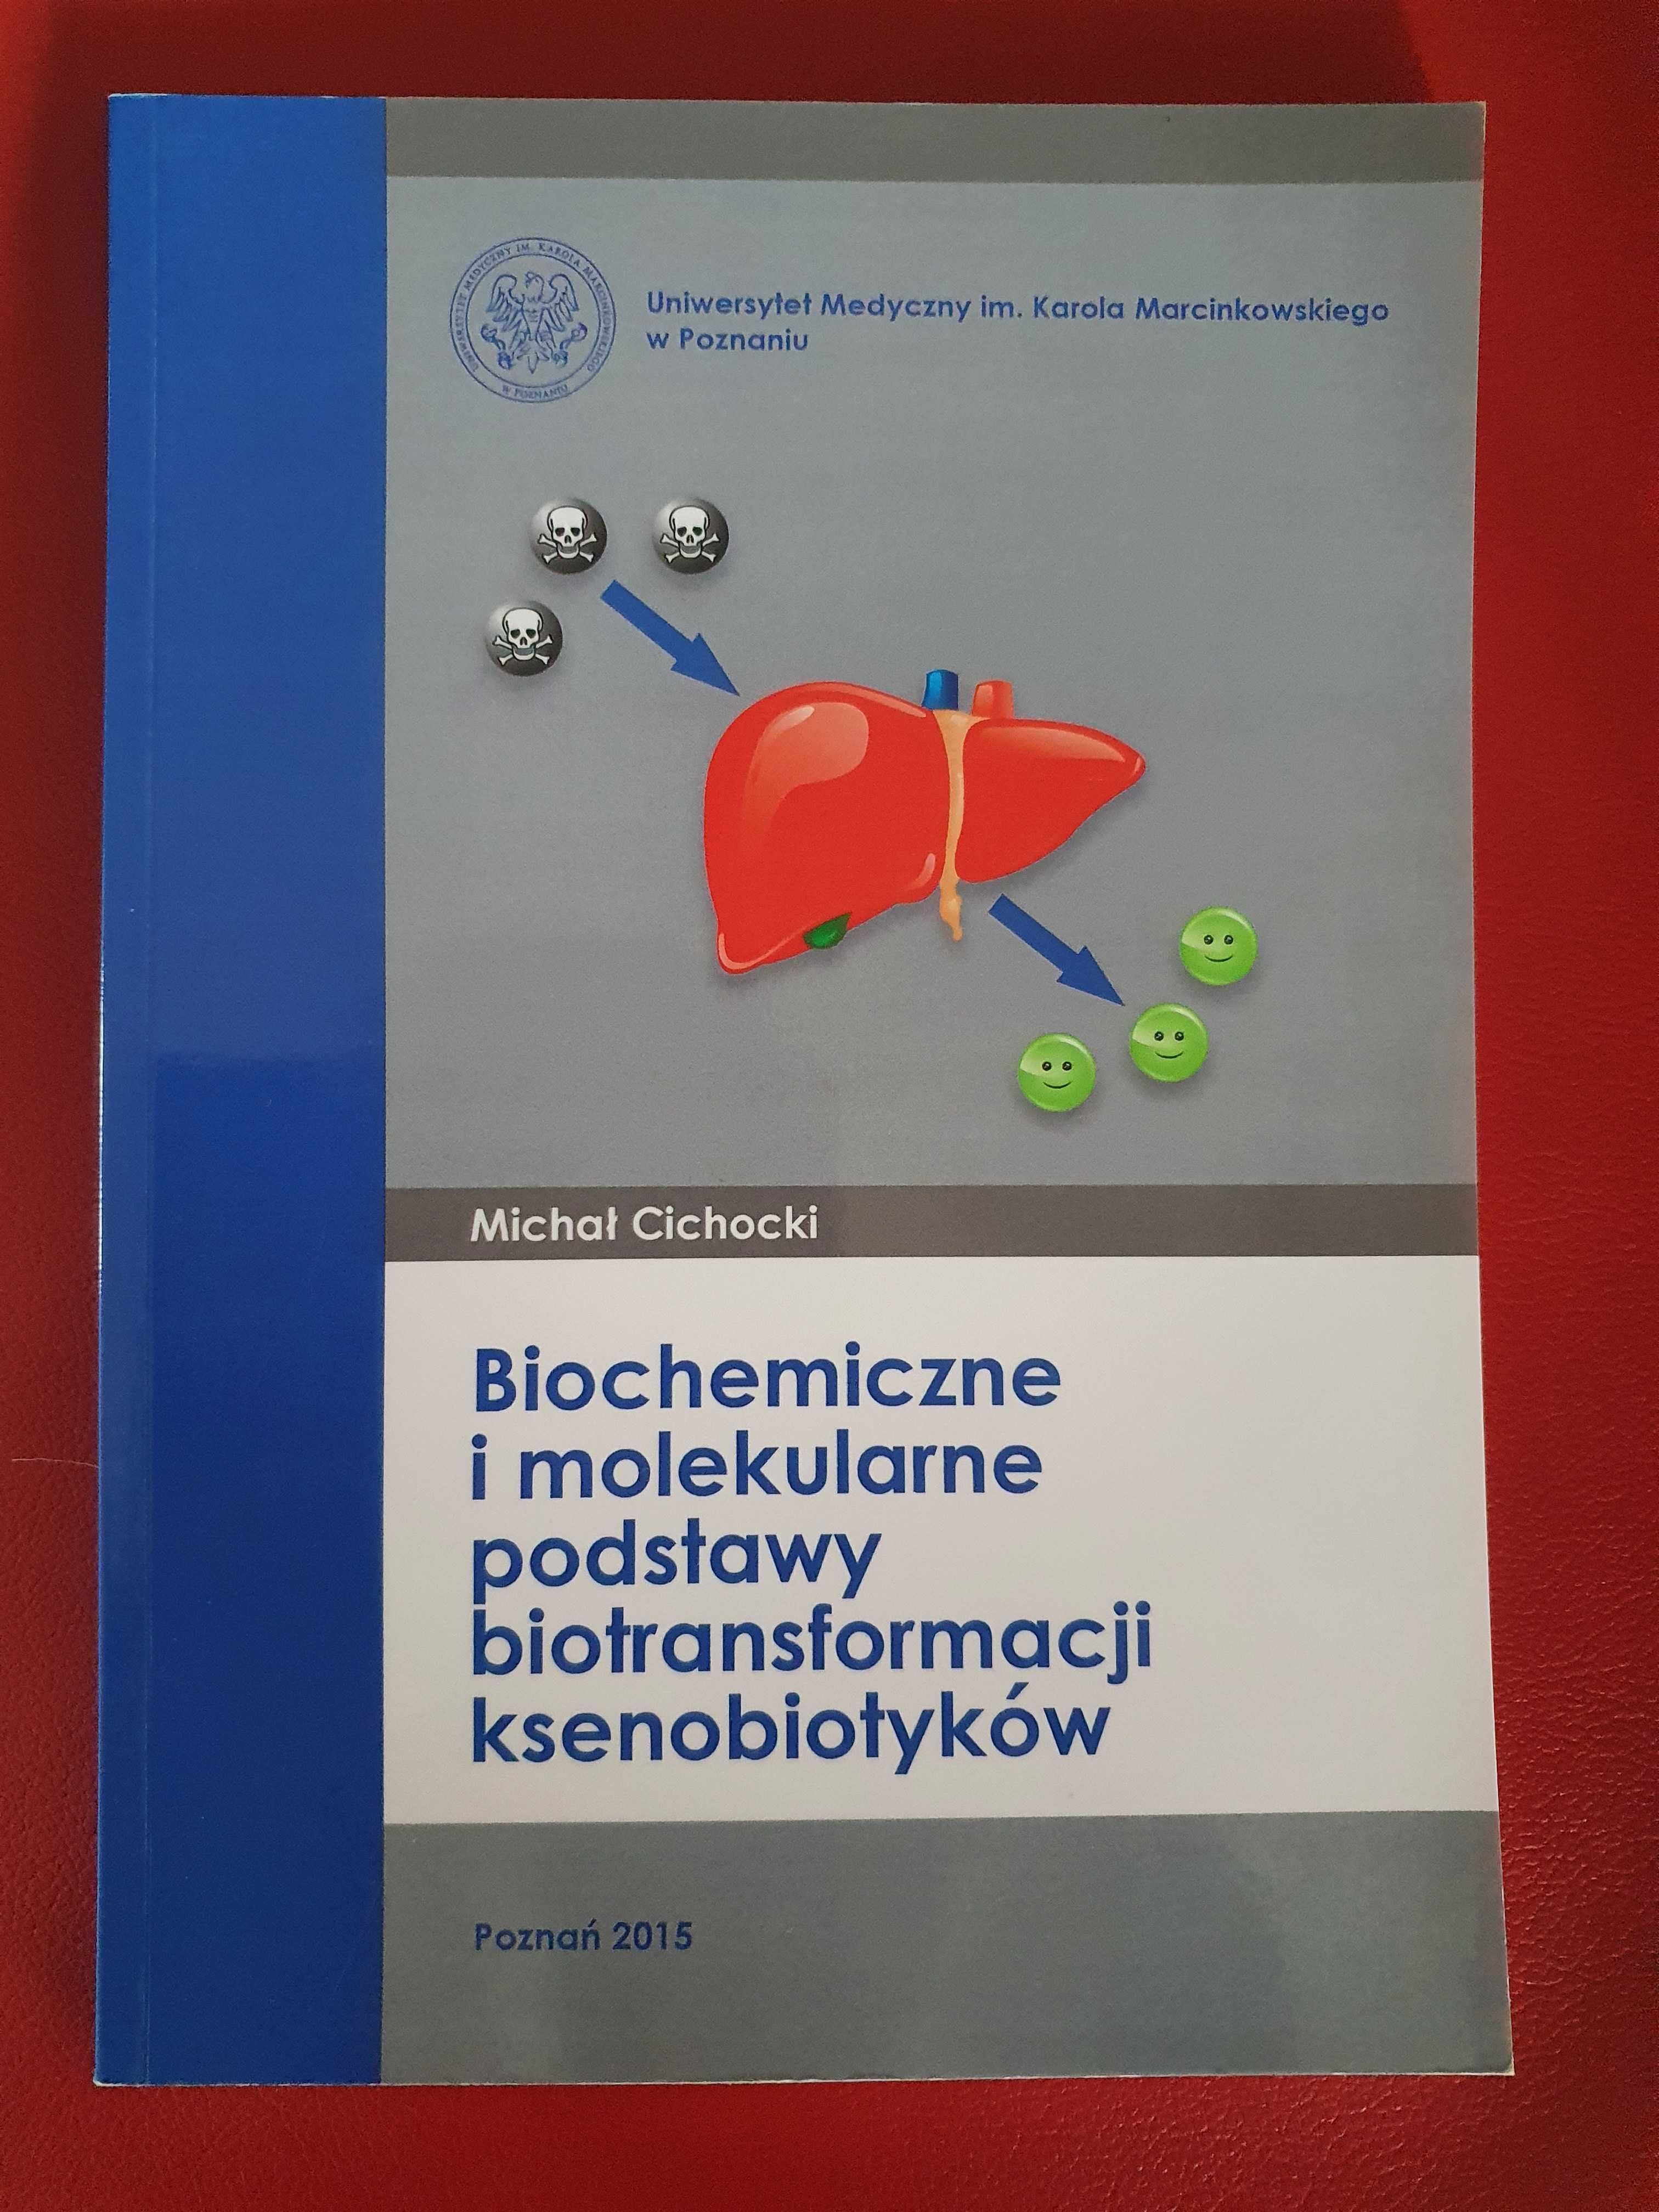 Biochemiczne i molekulatne podstawy biotransformacji ksenobiotyków